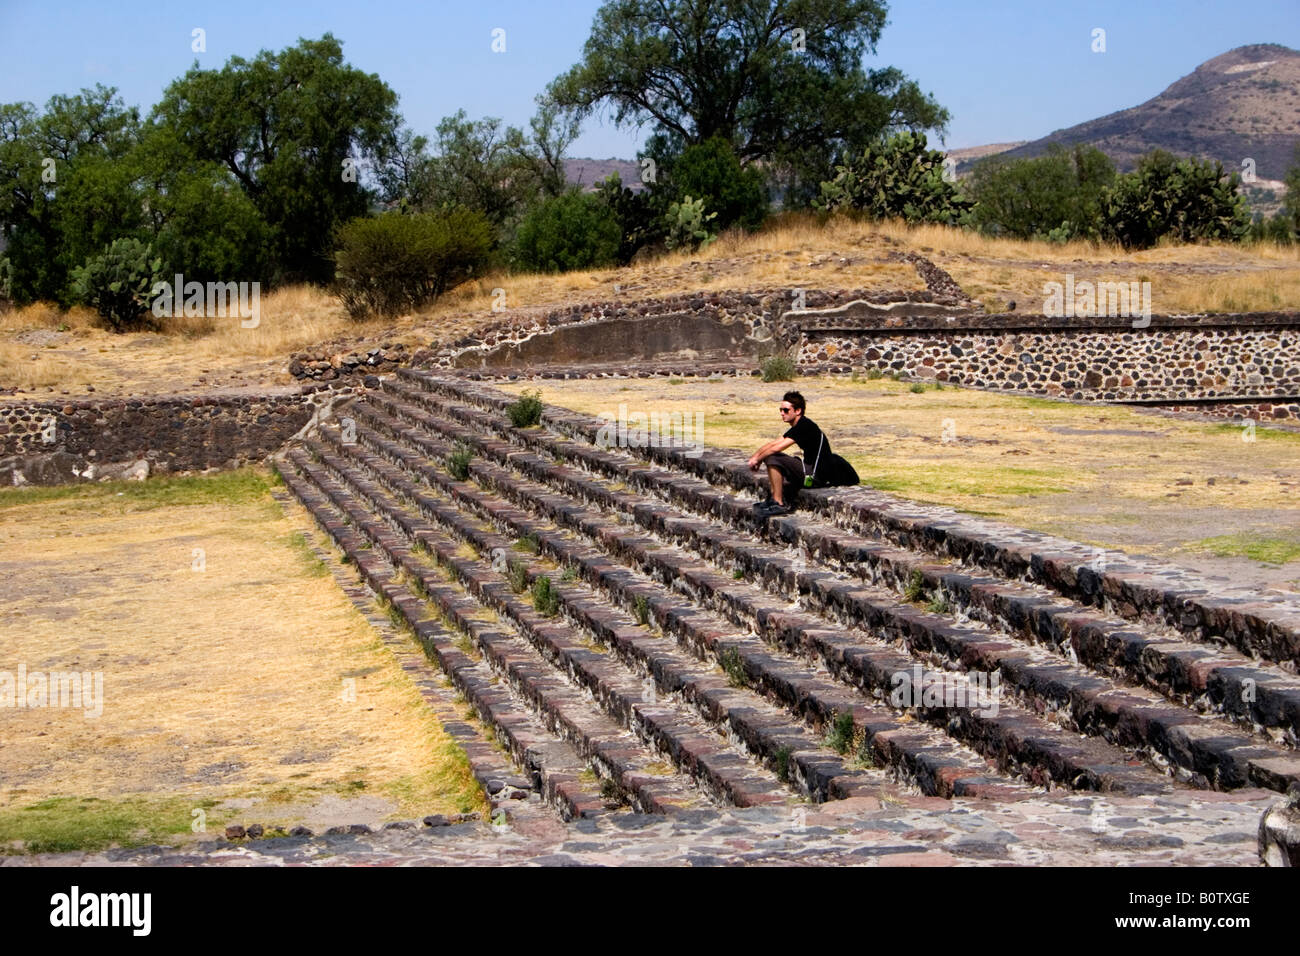 Ein Tourist in Teotihuacan, die größte präkolumbische Stadt in Amerika, Mexiko und Mittelamerika die Largst Ruine Standort. Stockfoto